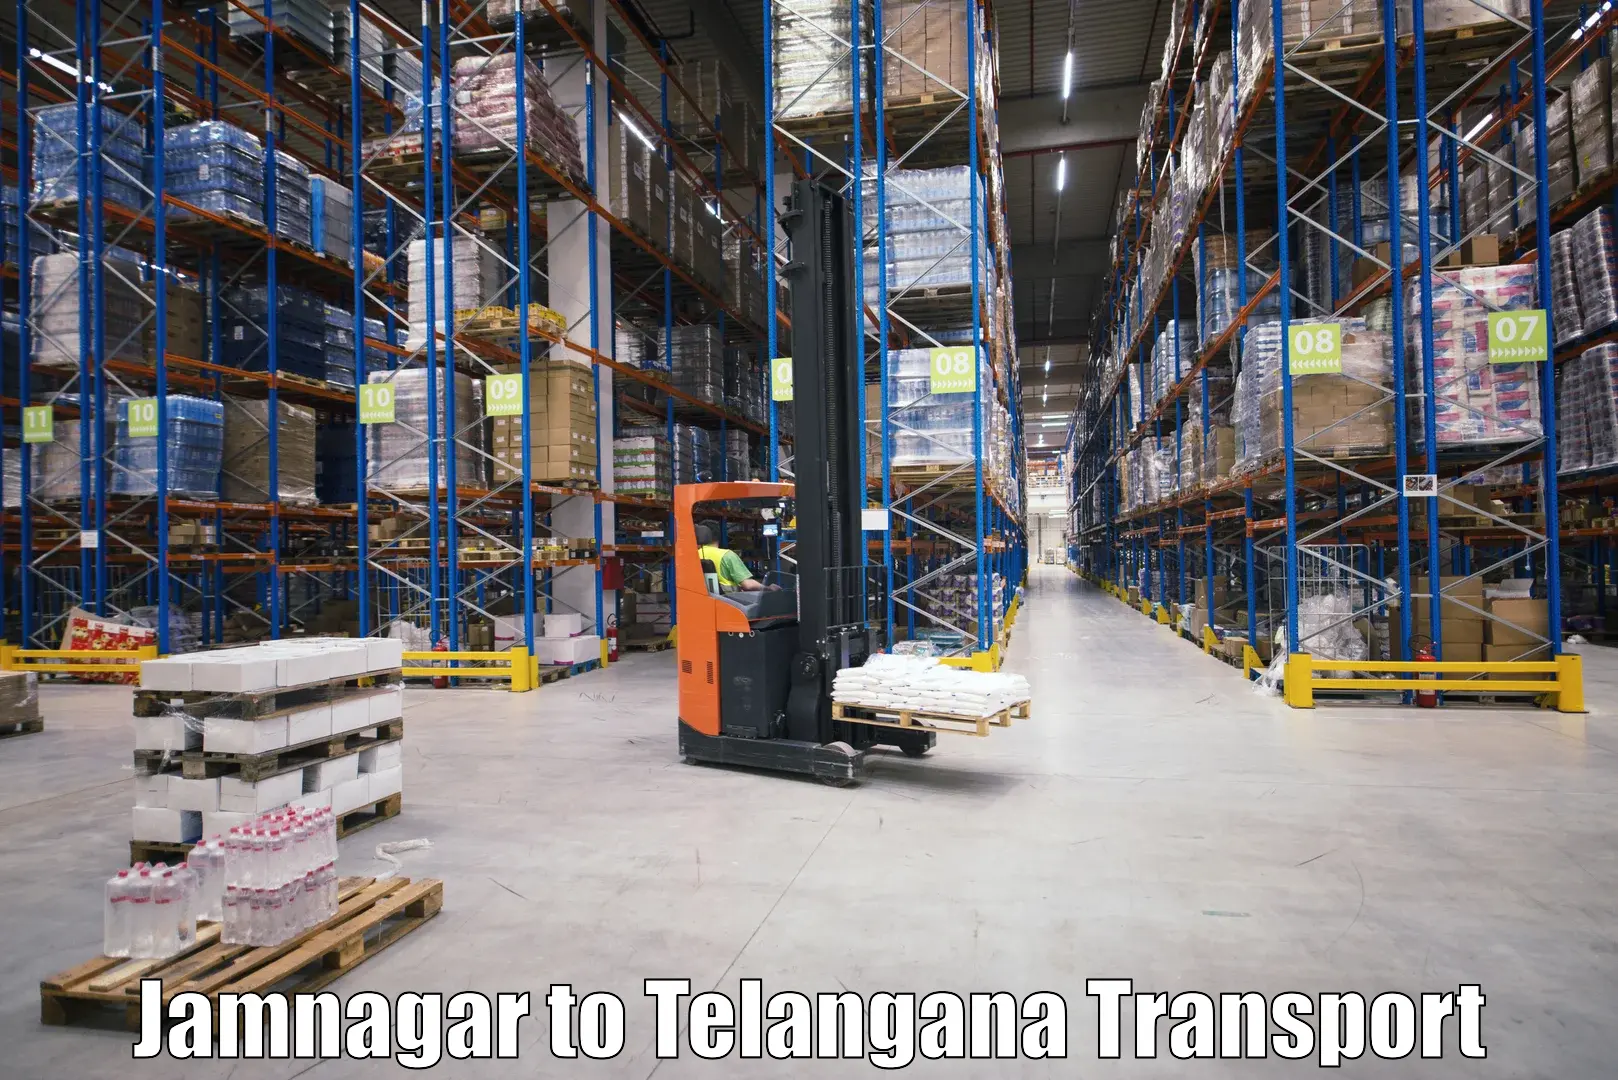 Air cargo transport services Jamnagar to Amangal